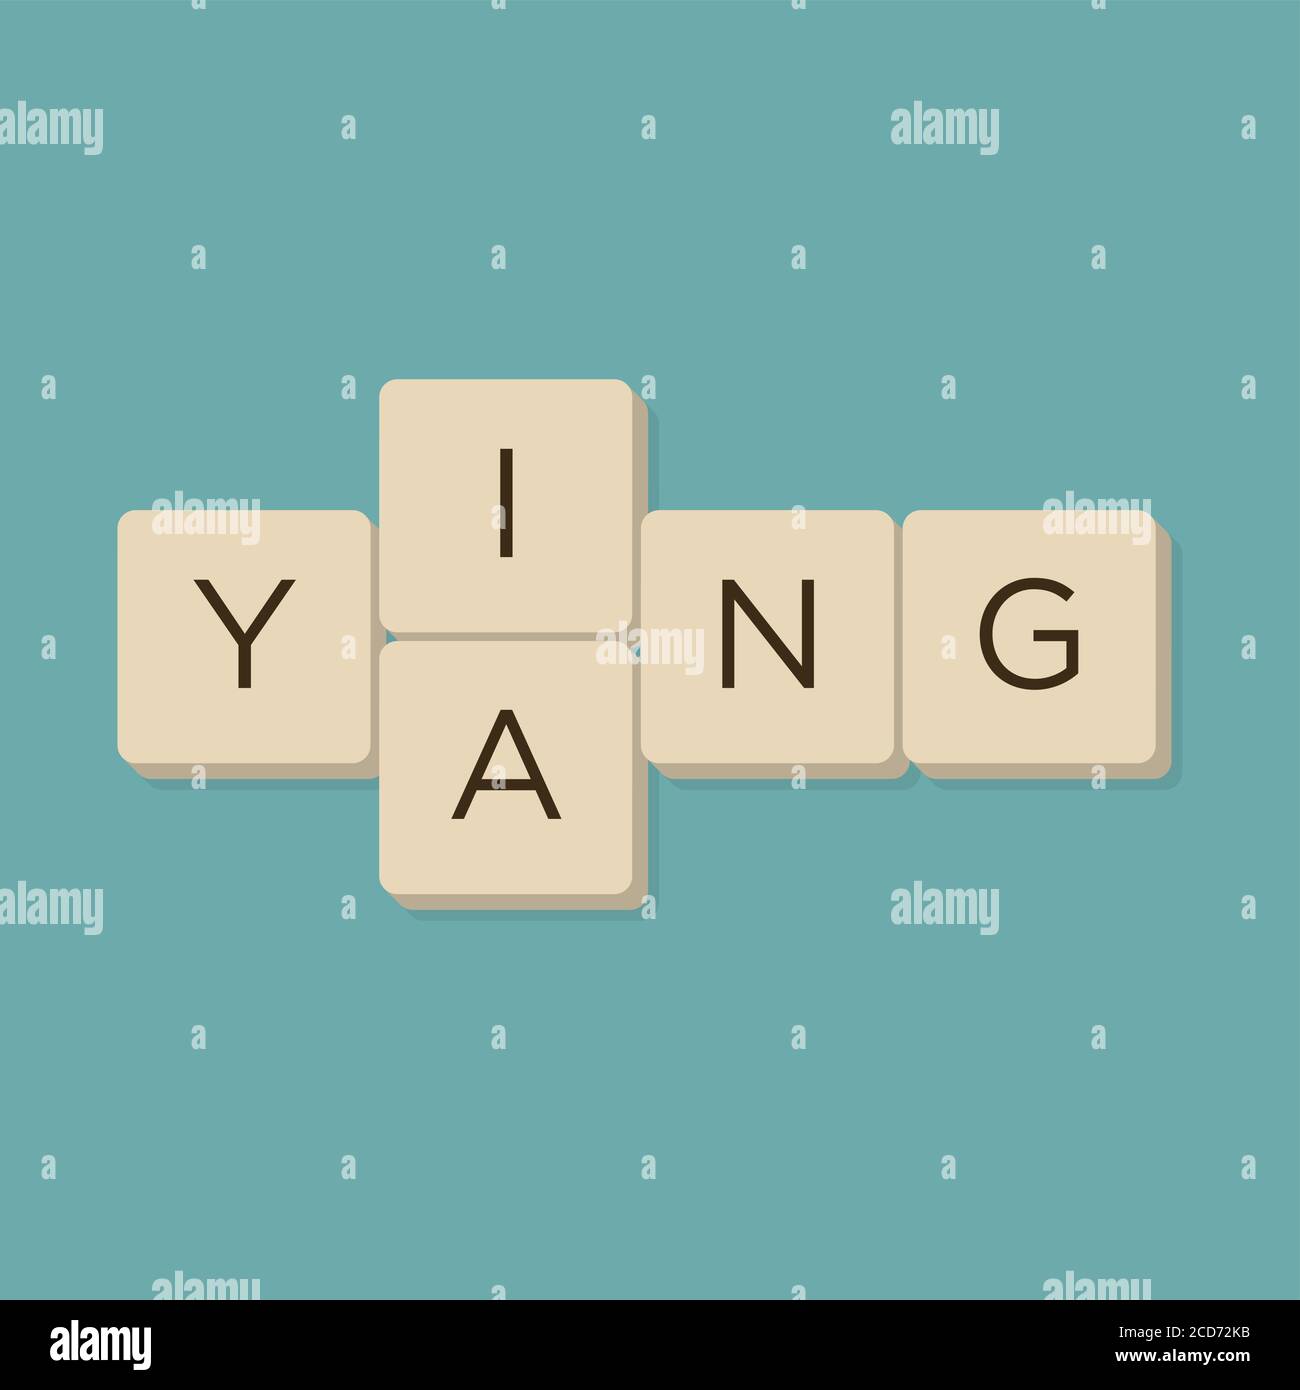 Ying yang gioco di parole in lettere scrabble. Isolare l'illustrazione vettoriale. Illustrazione Vettoriale